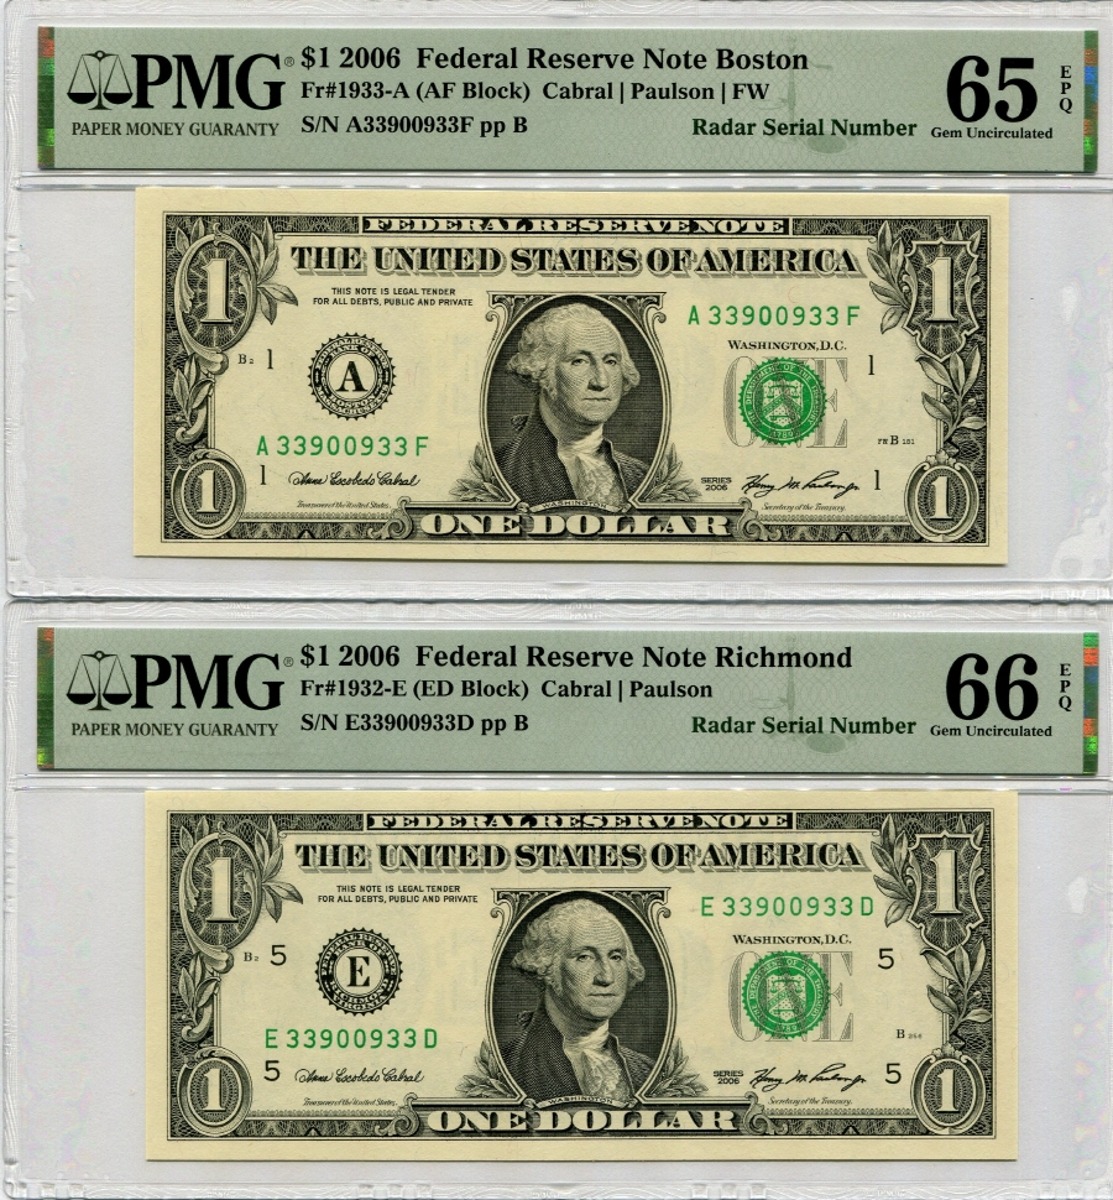 미국 2006년 1달러 레이더 (3390 0933) 2장 쌍둥이 PMG 65, 66등급